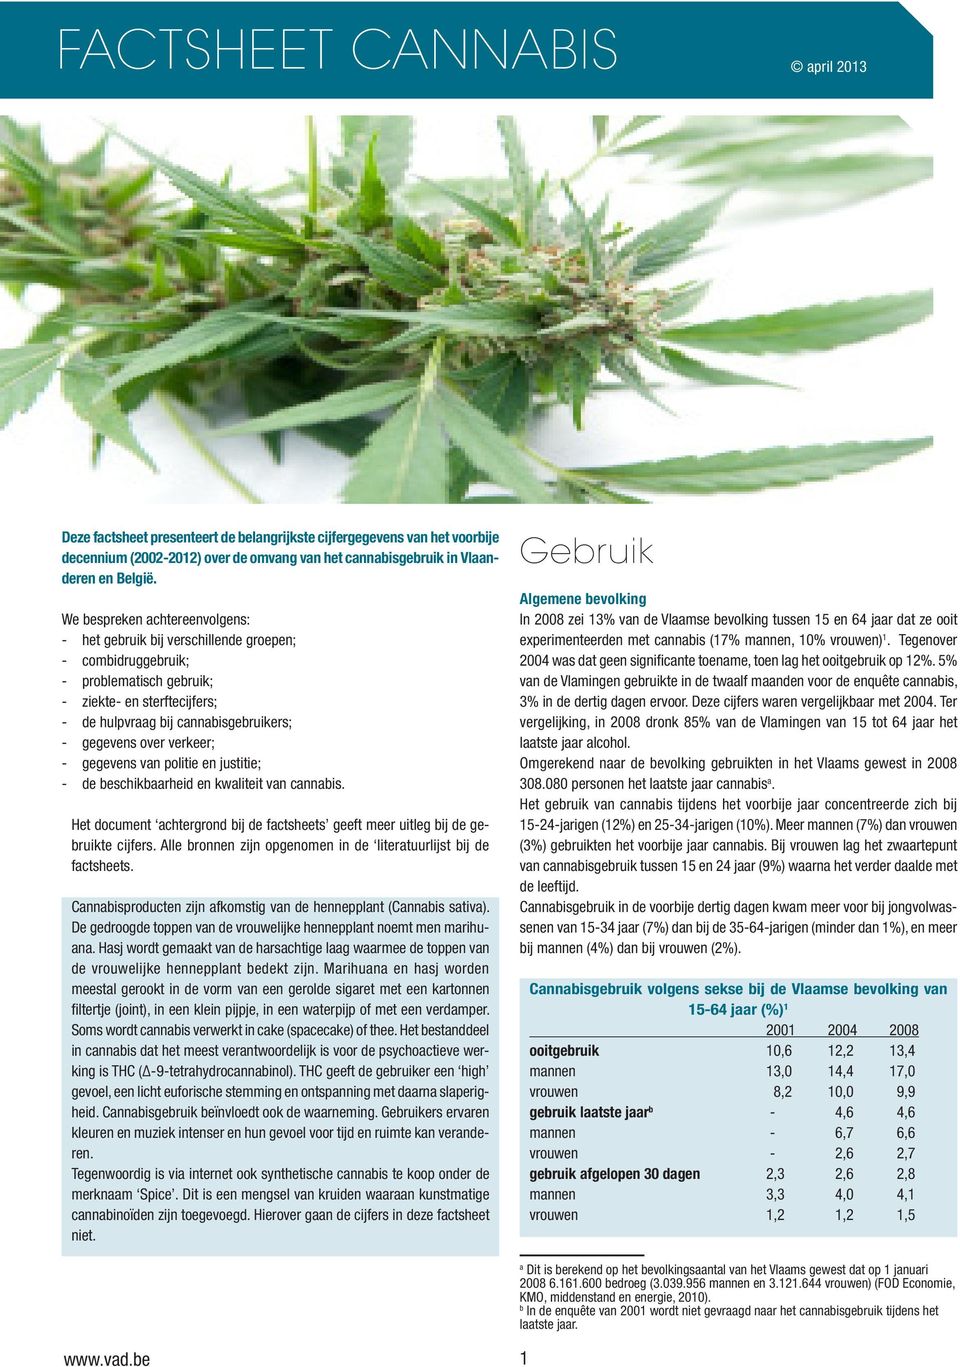 over verkeer; - gegevens van politie en justitie; - de beschikbaarheid en kwaliteit van cannabis. Het document achtergrond bij de factsheets geeft meer uitleg bij de gebruikte cijfers.